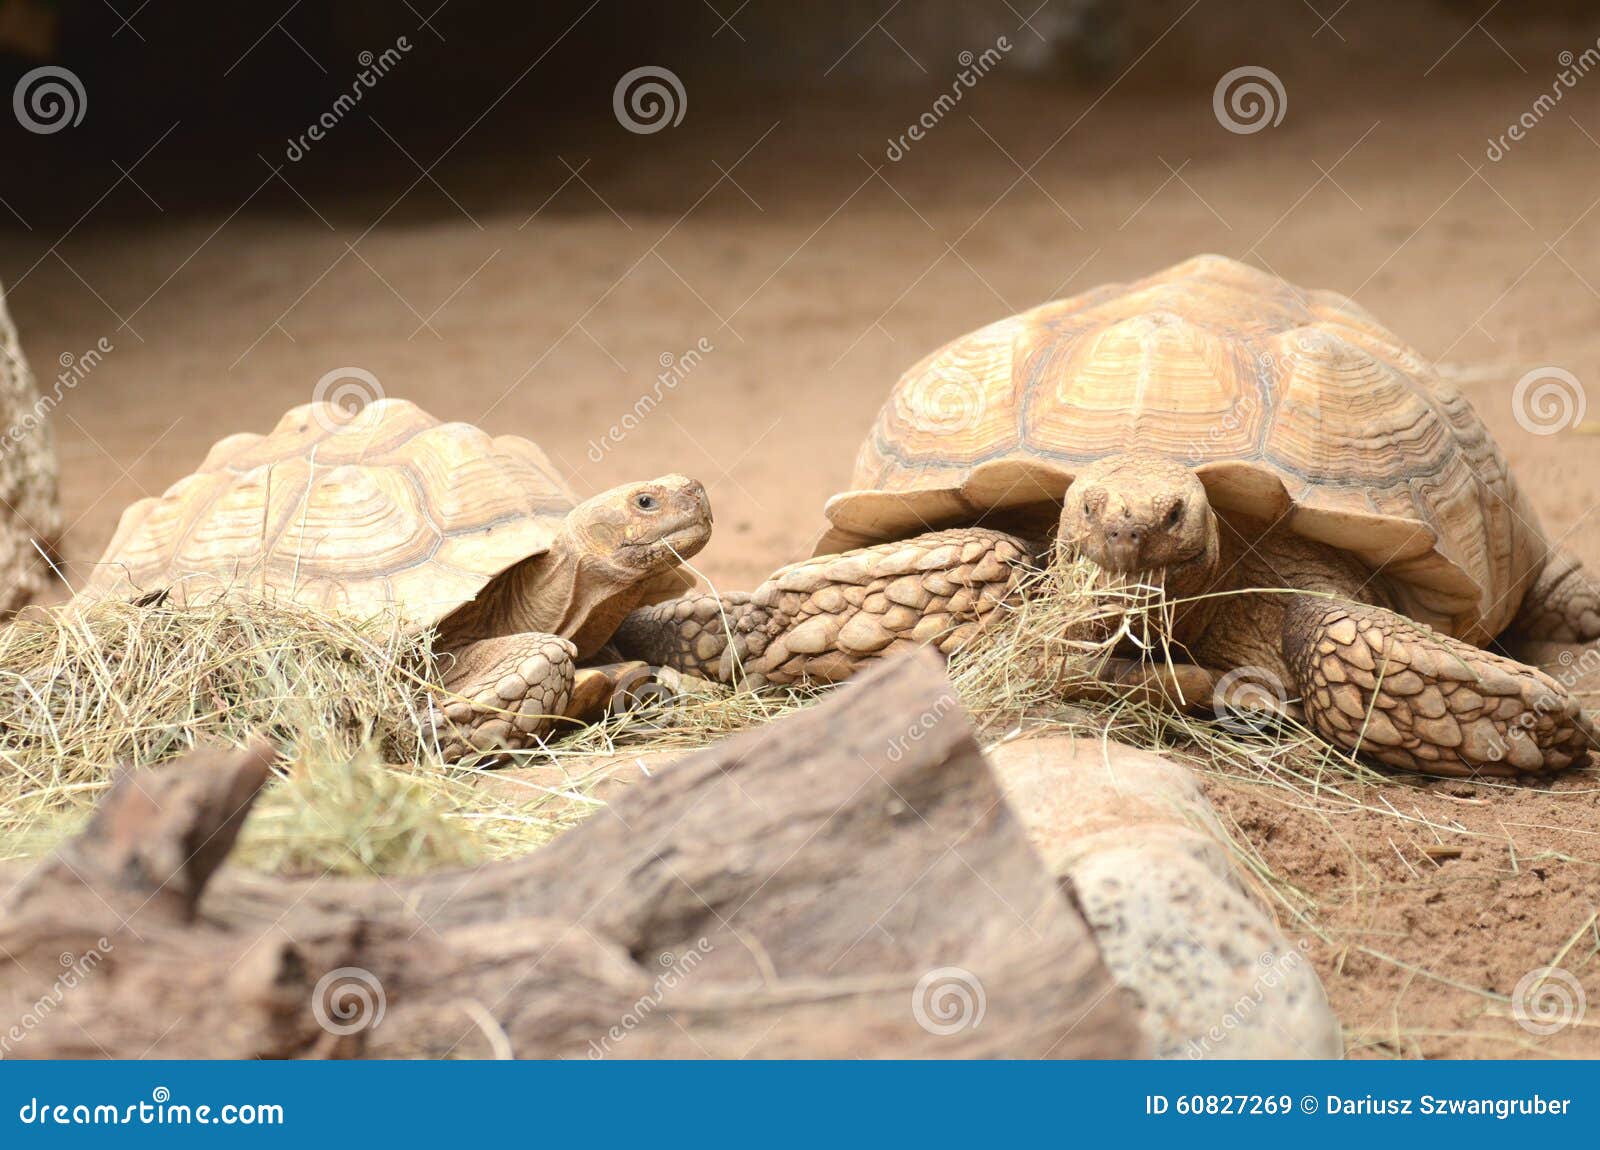 turtles in loro park in puerto de la cruz on tenerife, canary islands